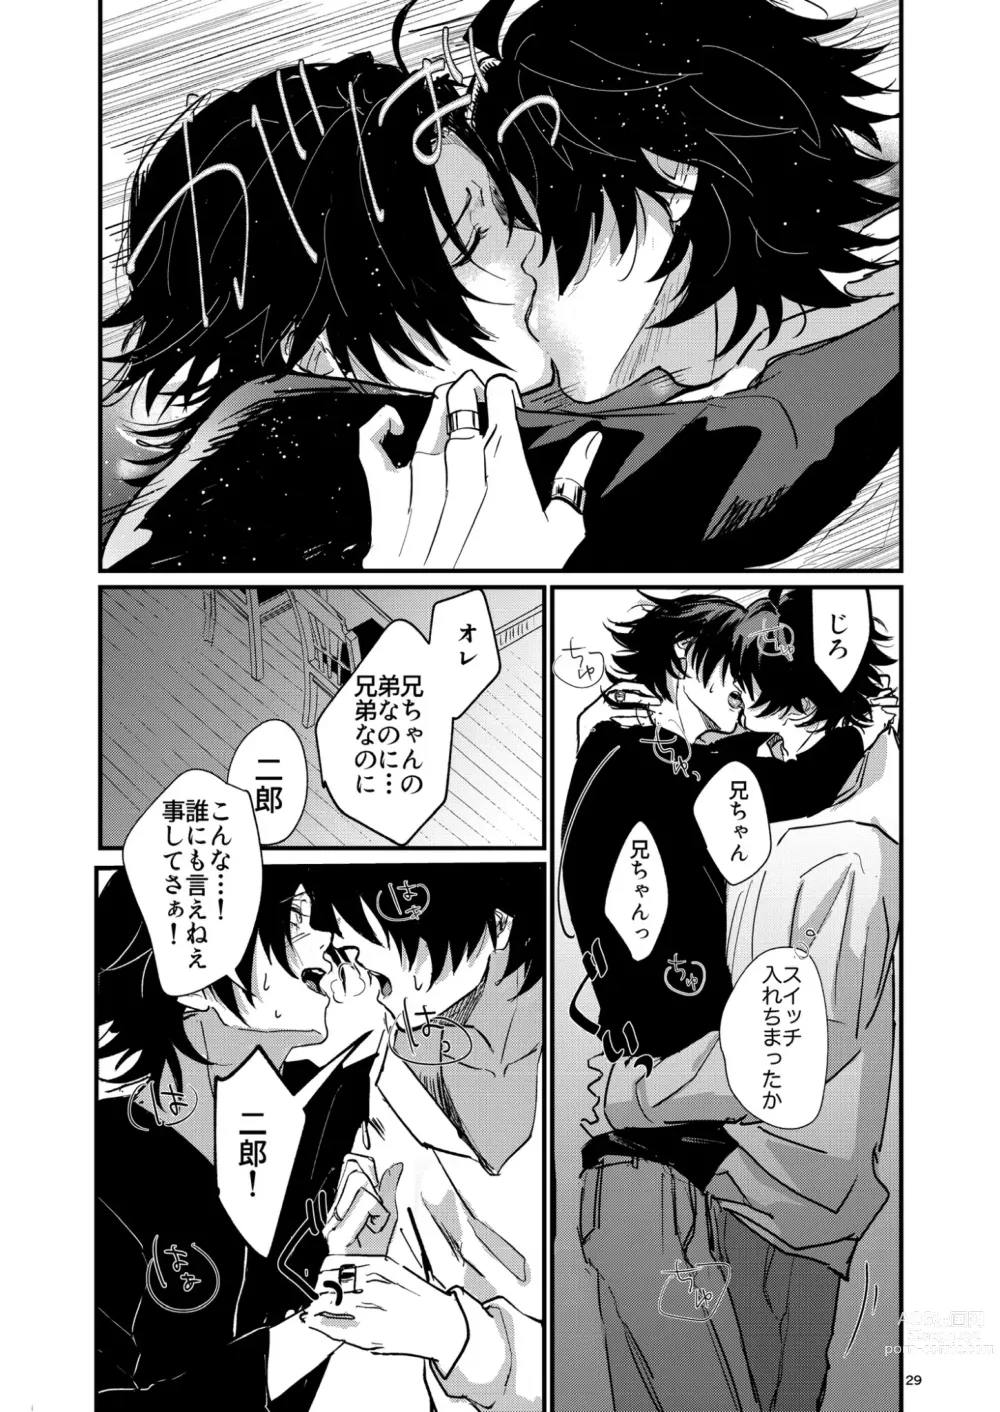 Page 28 of doujinshi Fukashin no Nichijou